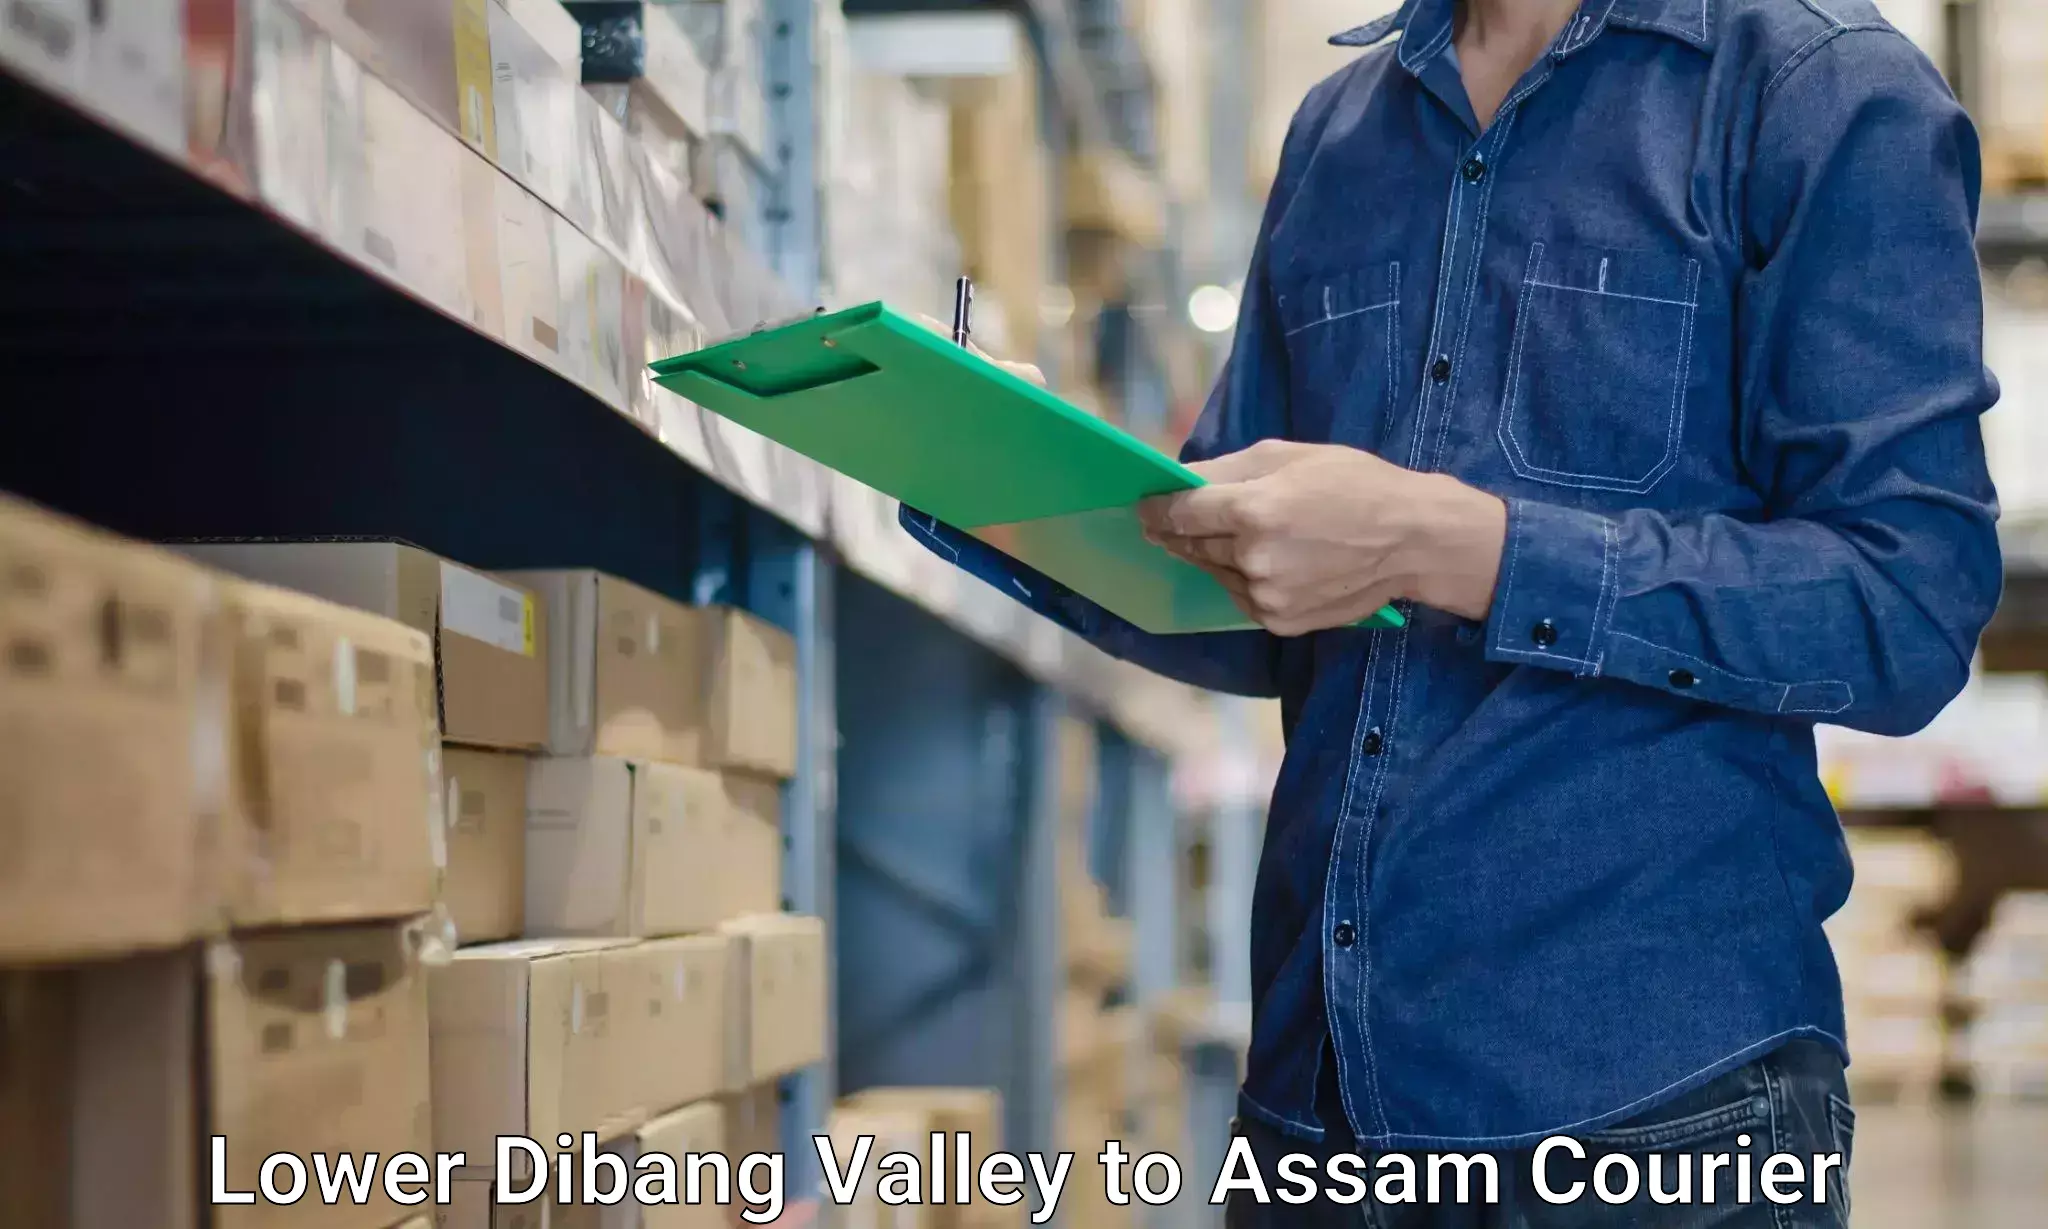 Furniture moving experts Lower Dibang Valley to Baksha Bodoland